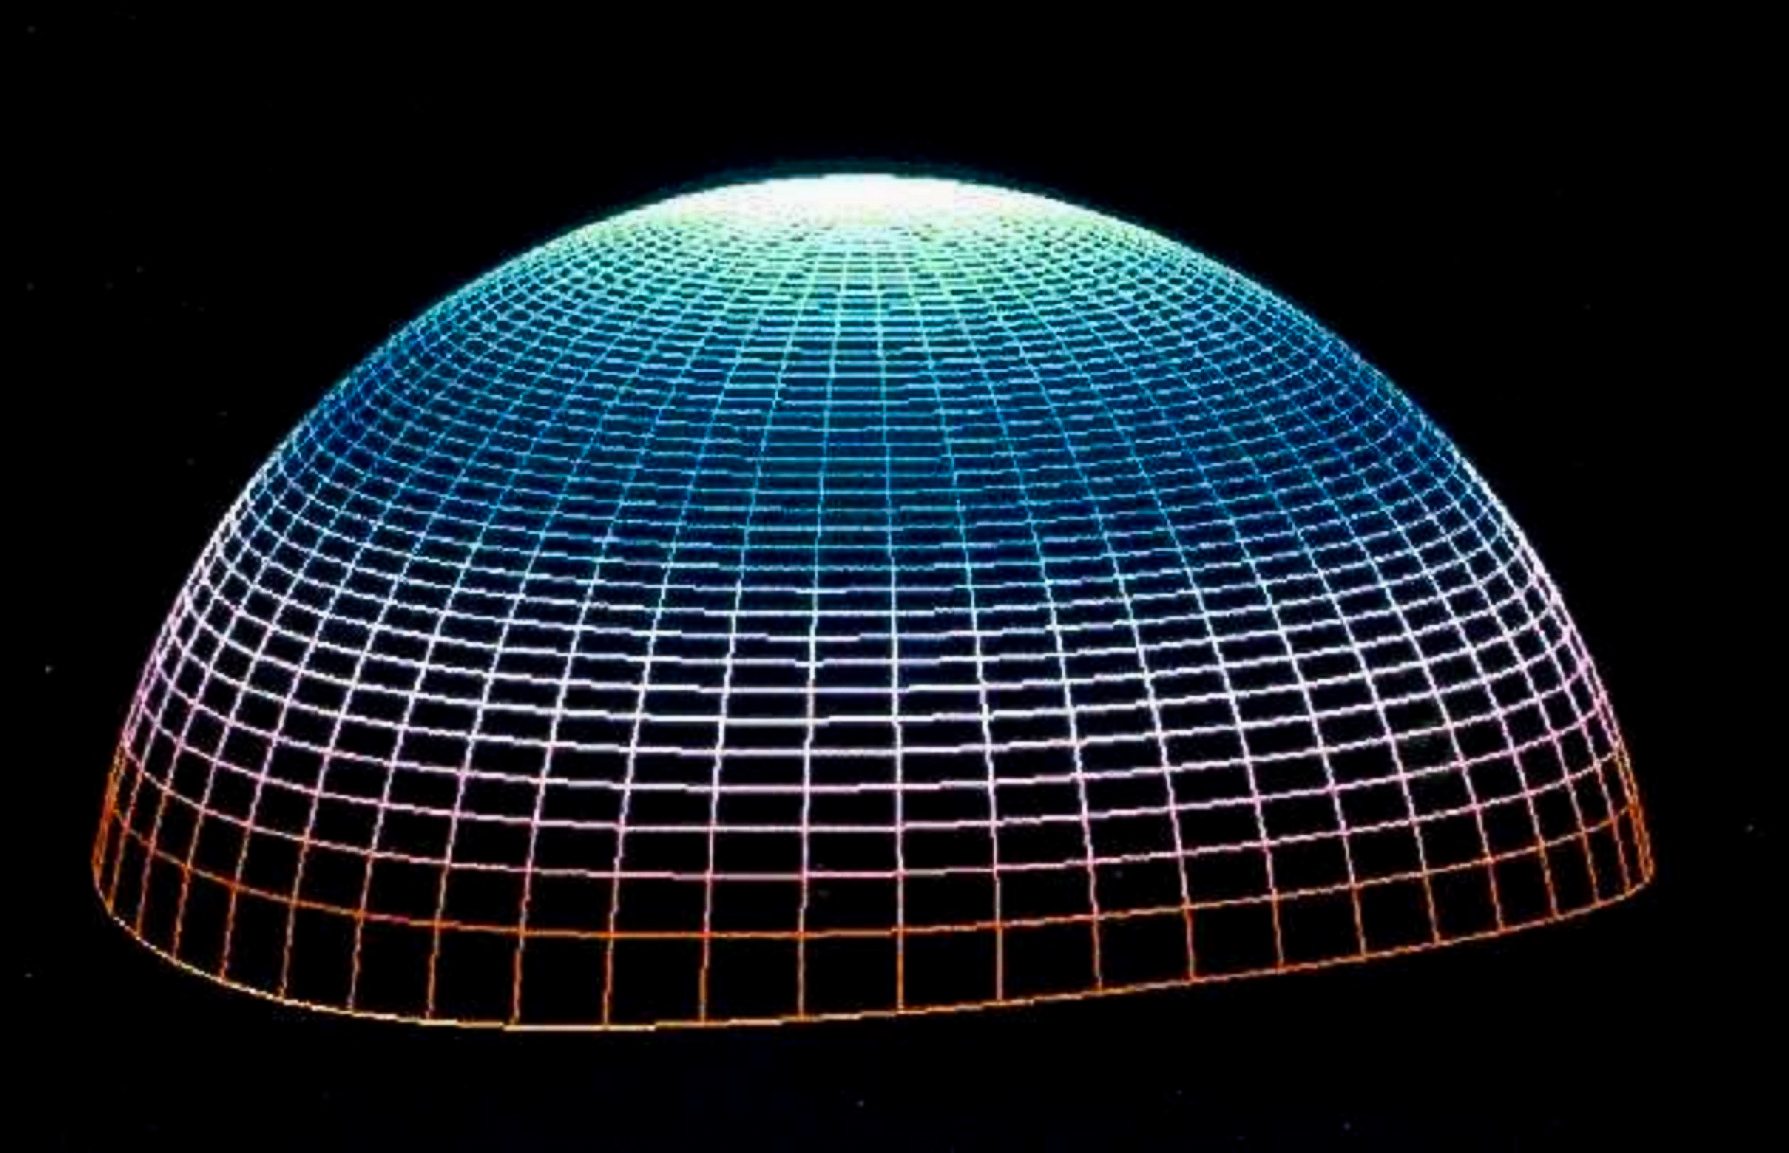 Lensa ini adalah ellipsoid yang hampir sempurna. Tampilan tiga dimensi dari satu permukaan yang terdiri dari semua bagian.